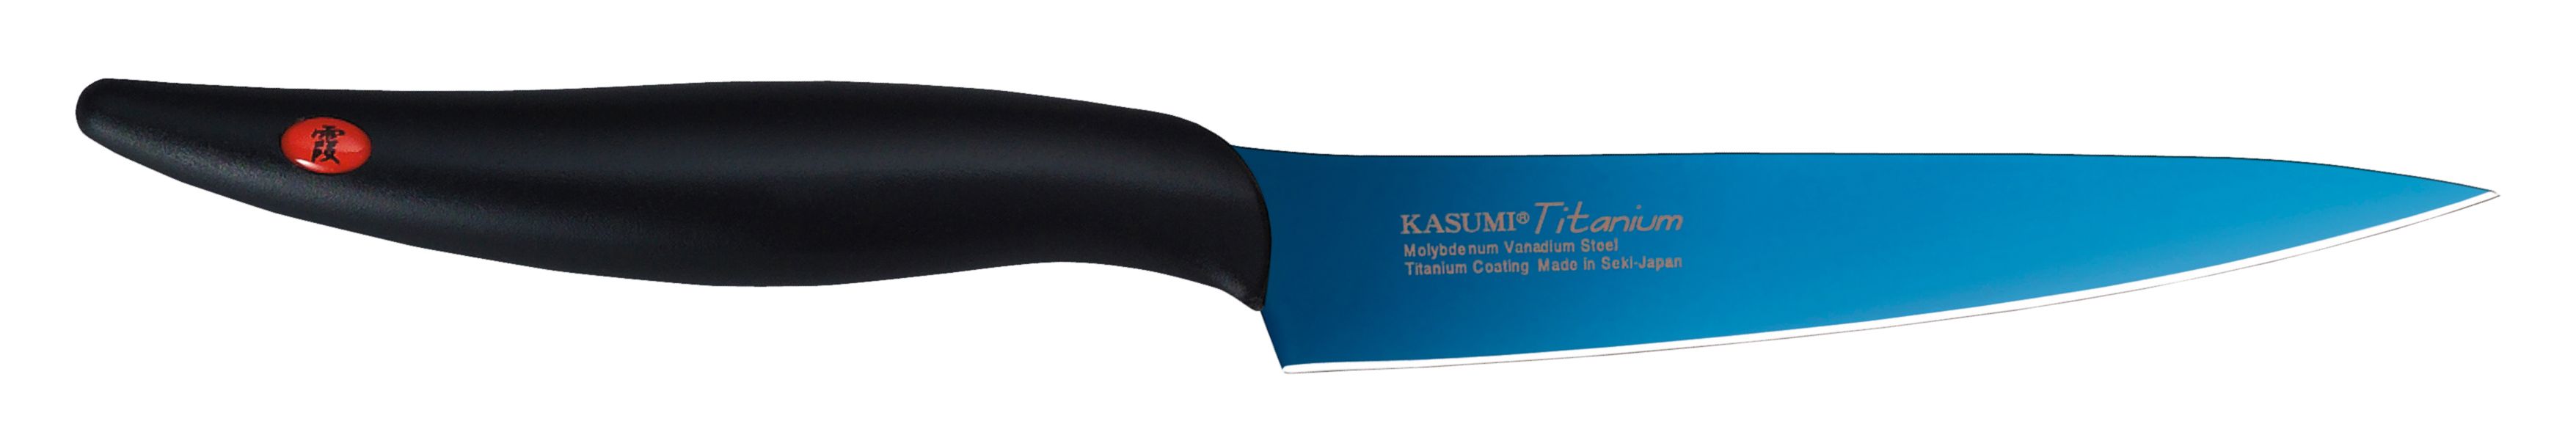 Kasumi - couteau utilitaire 8 cm